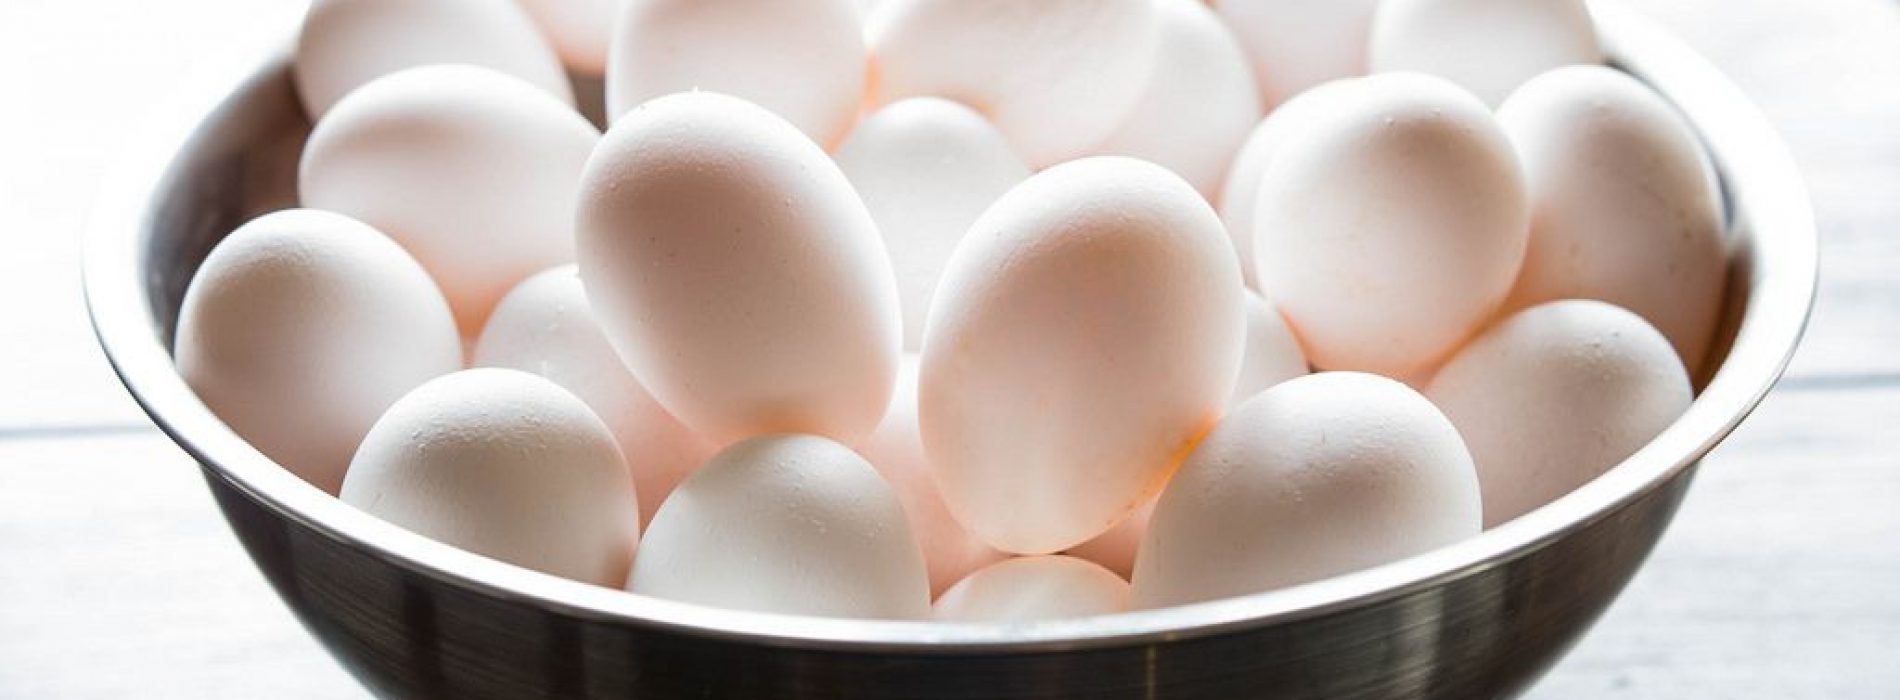 Eieren beschermen juist tegen hartziekten (en veroorzaken ze dus niet). We zijn dus weer jarenlang misleid over voeding…